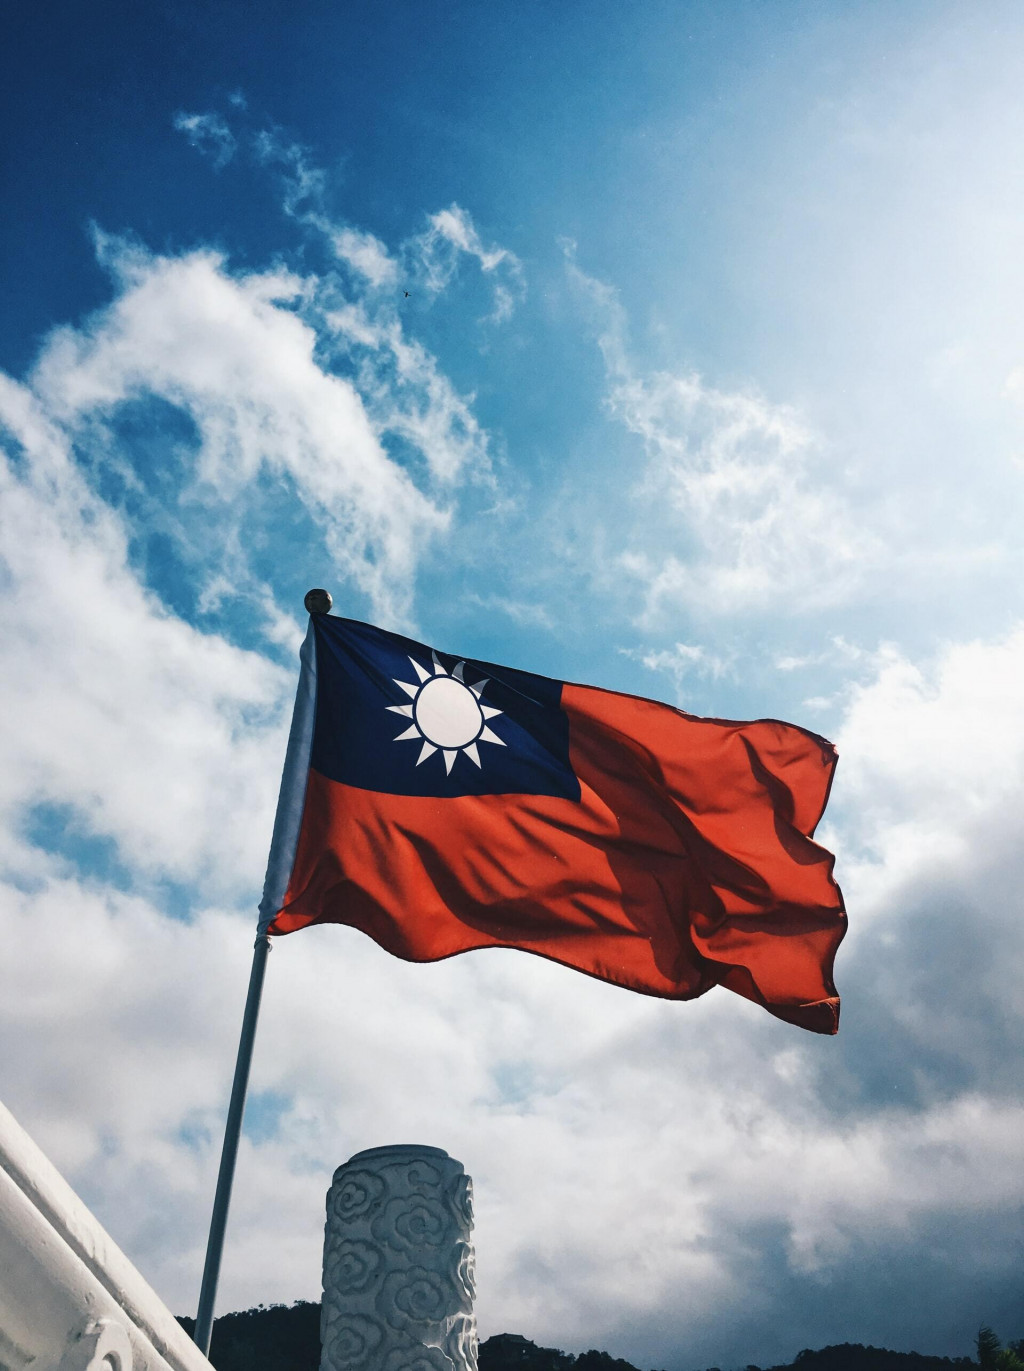 &lt;p&gt;Zastava Republike Kine (Tajvan)&lt;/p&gt;
